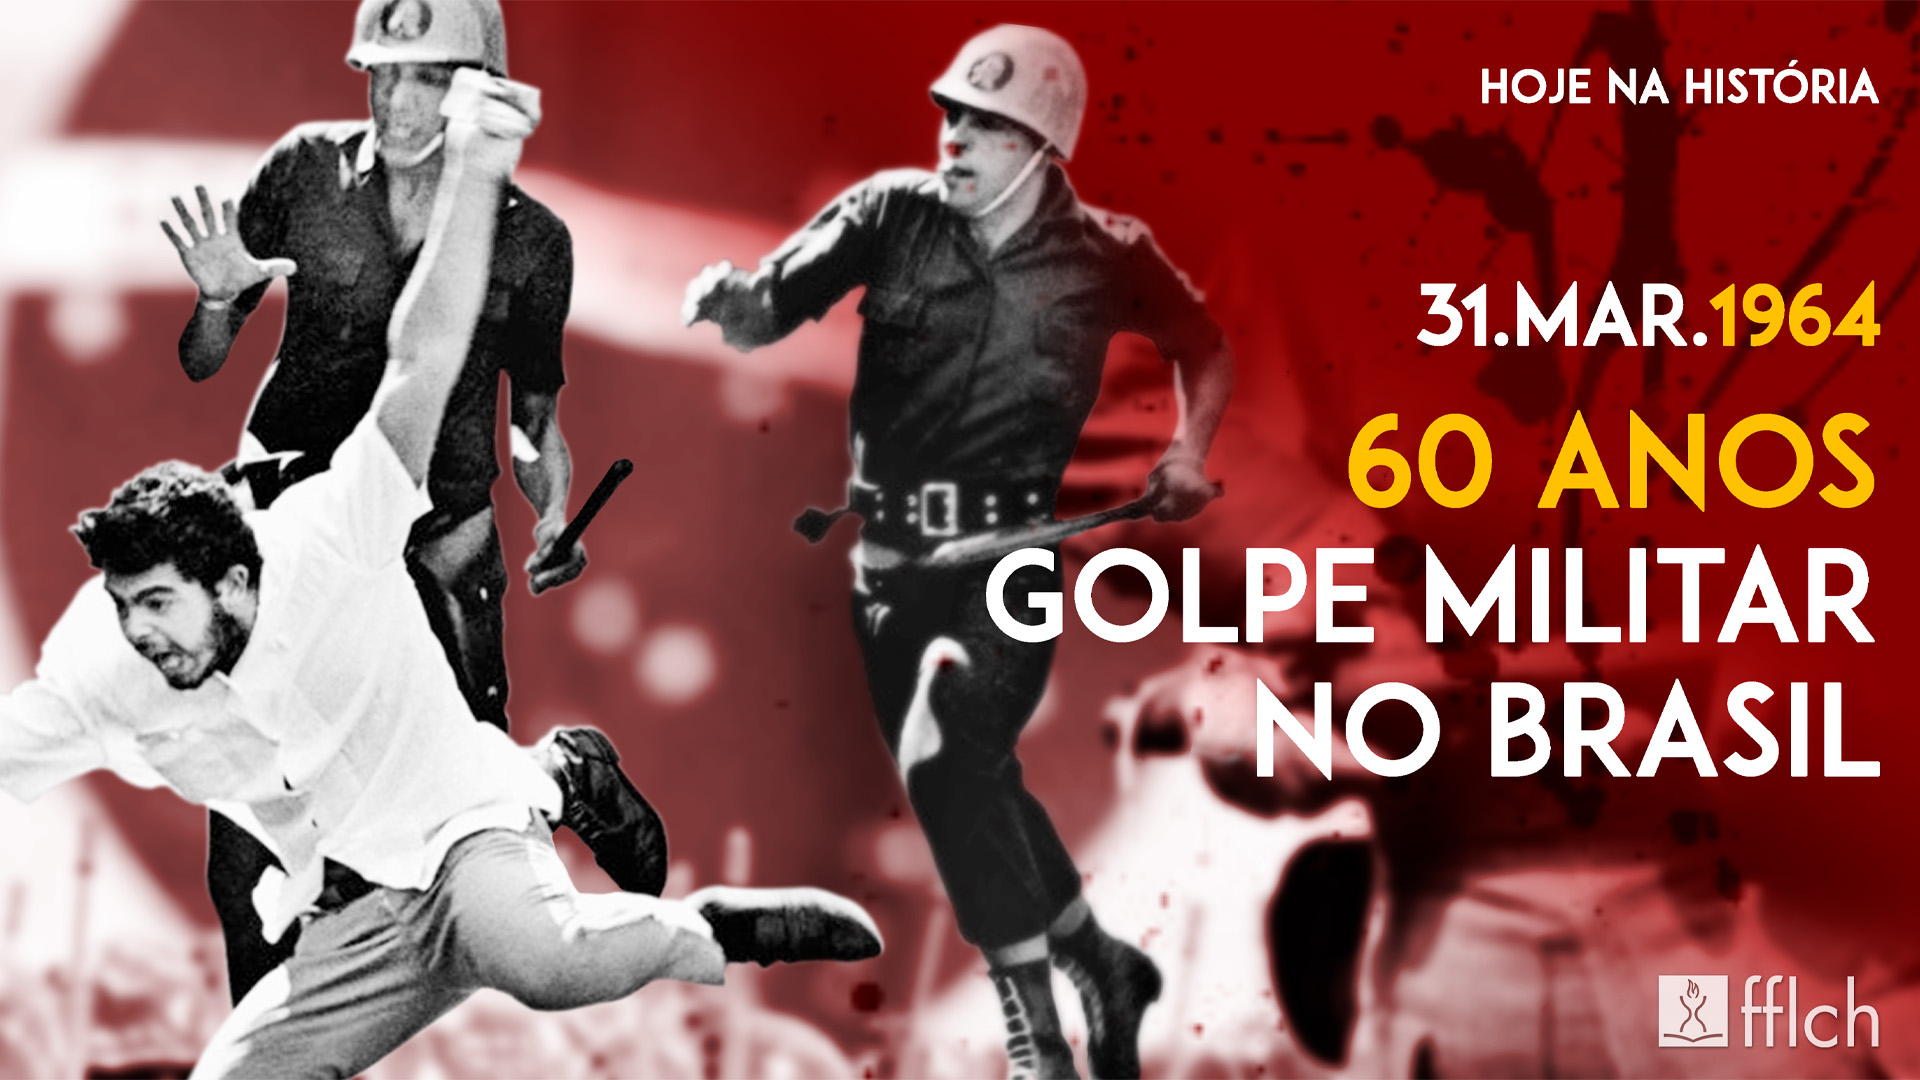 60 anos do golpe militar no Brasil